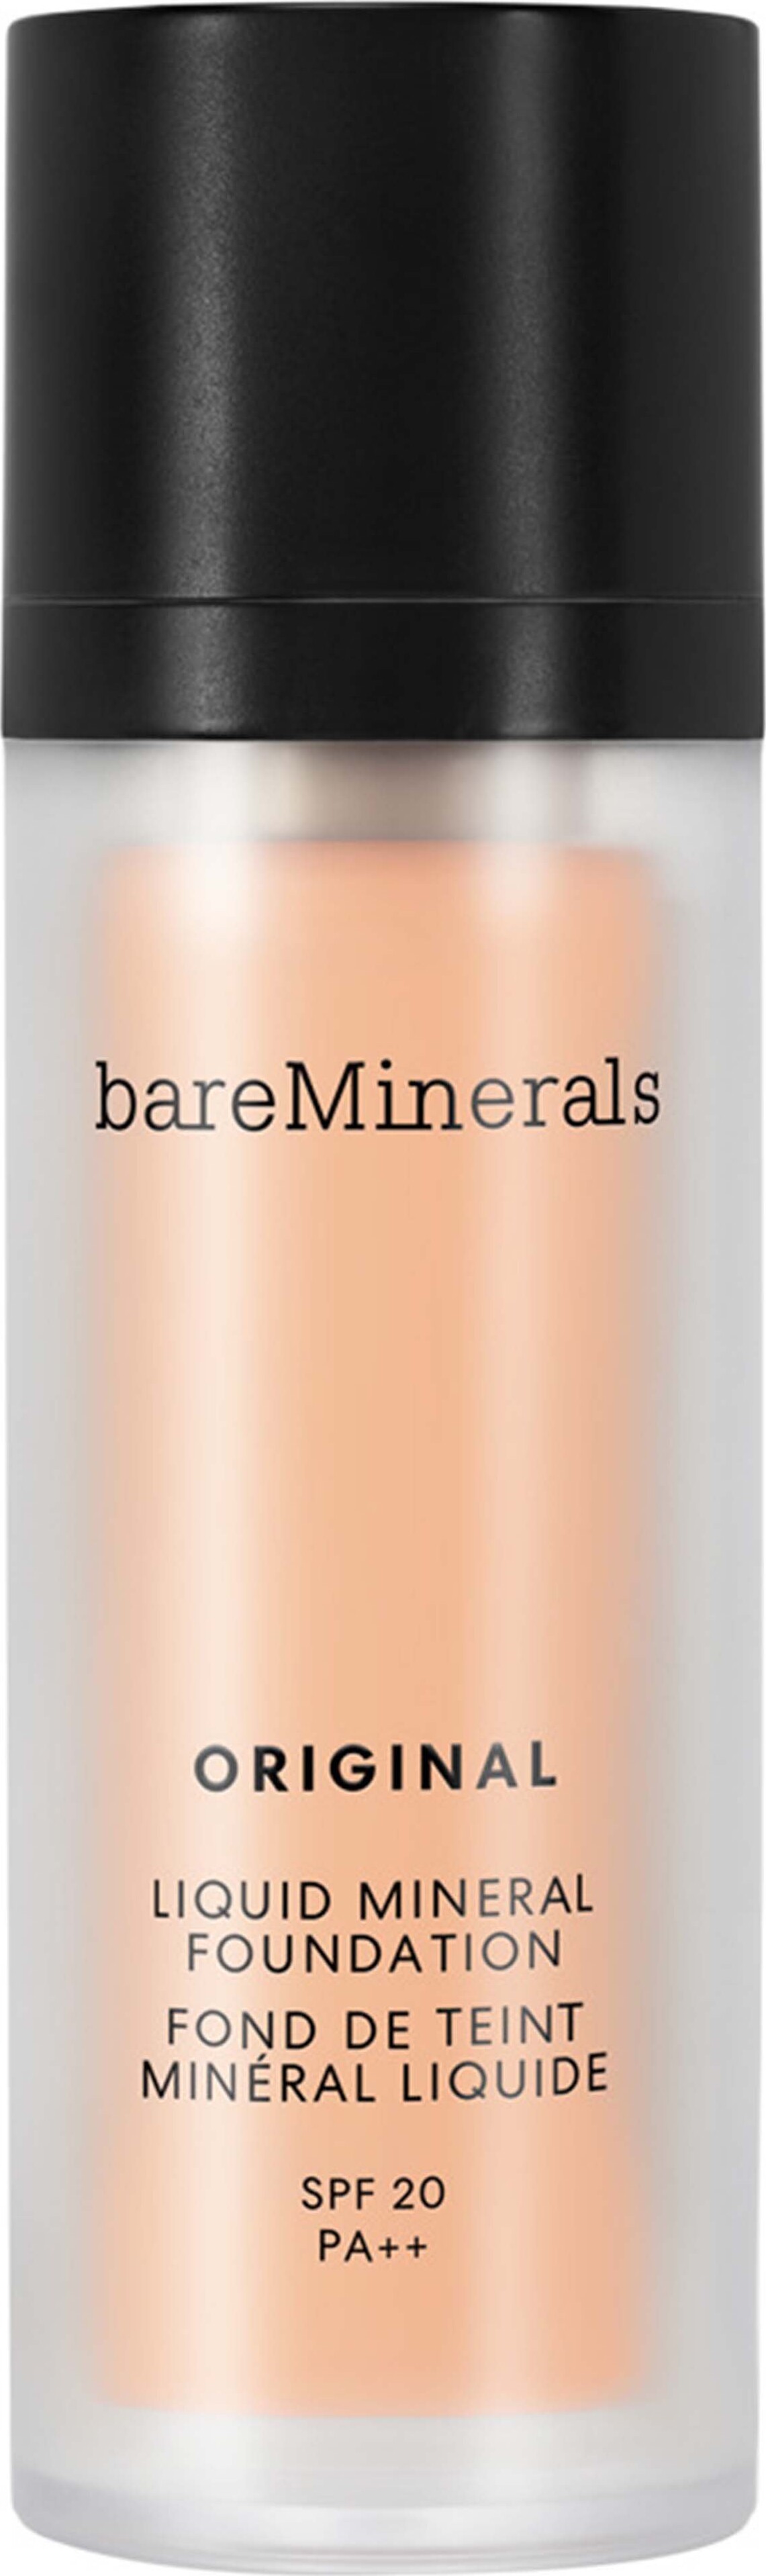 Bareminerals - Original Liquid Mineral Foundation - Medium 10